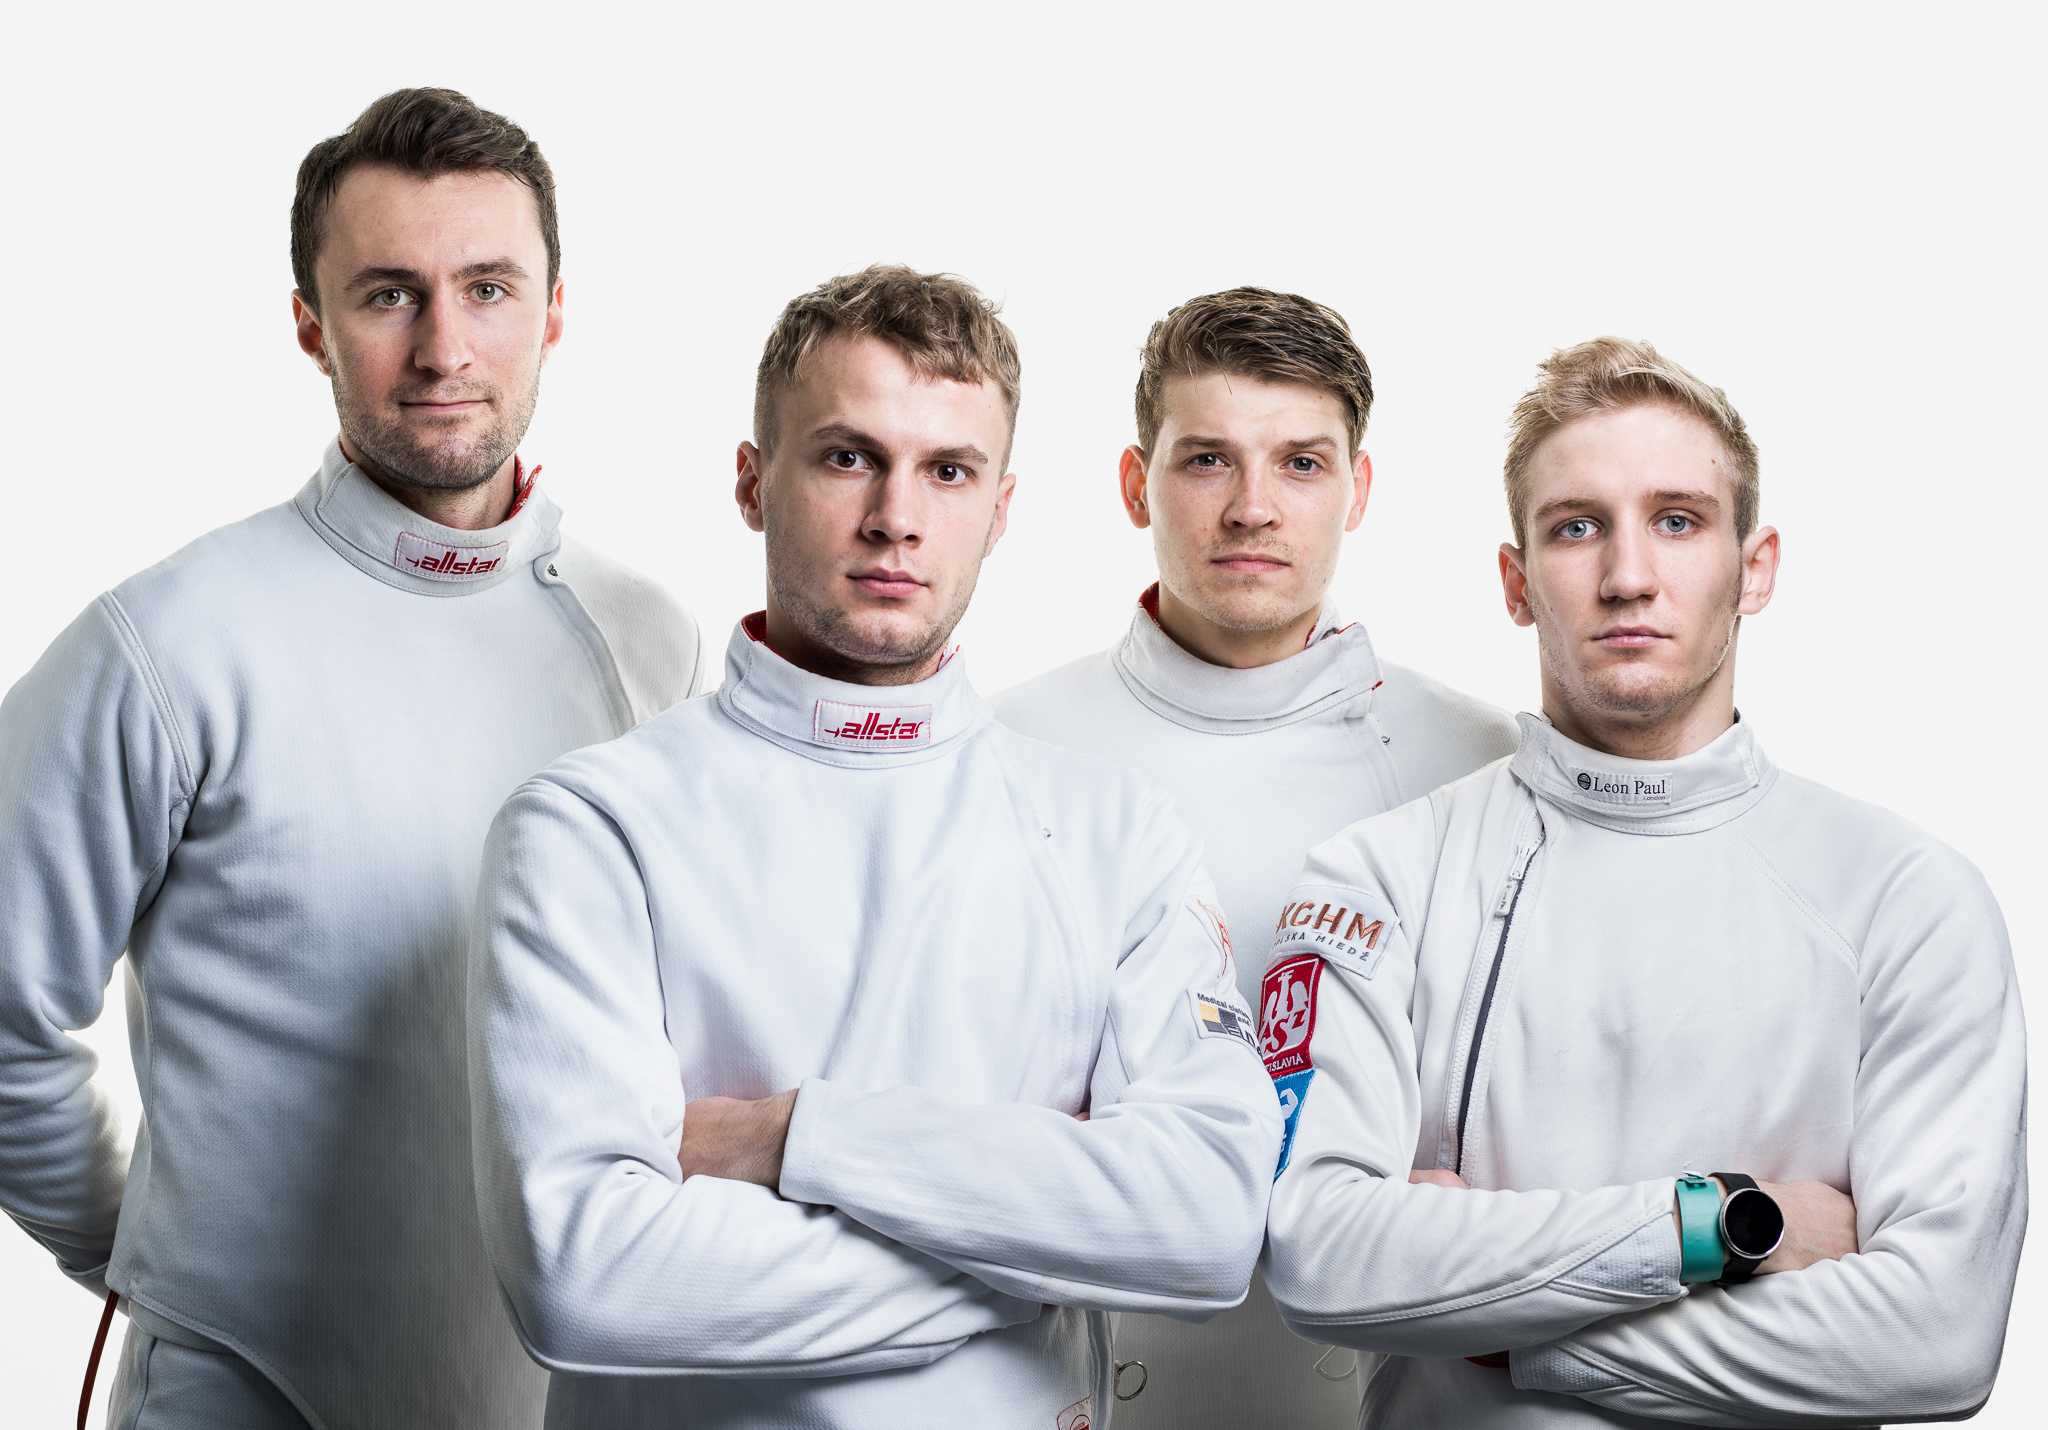 Gruppenportrait vom Team Polska National Fencing am Berne World Cup.